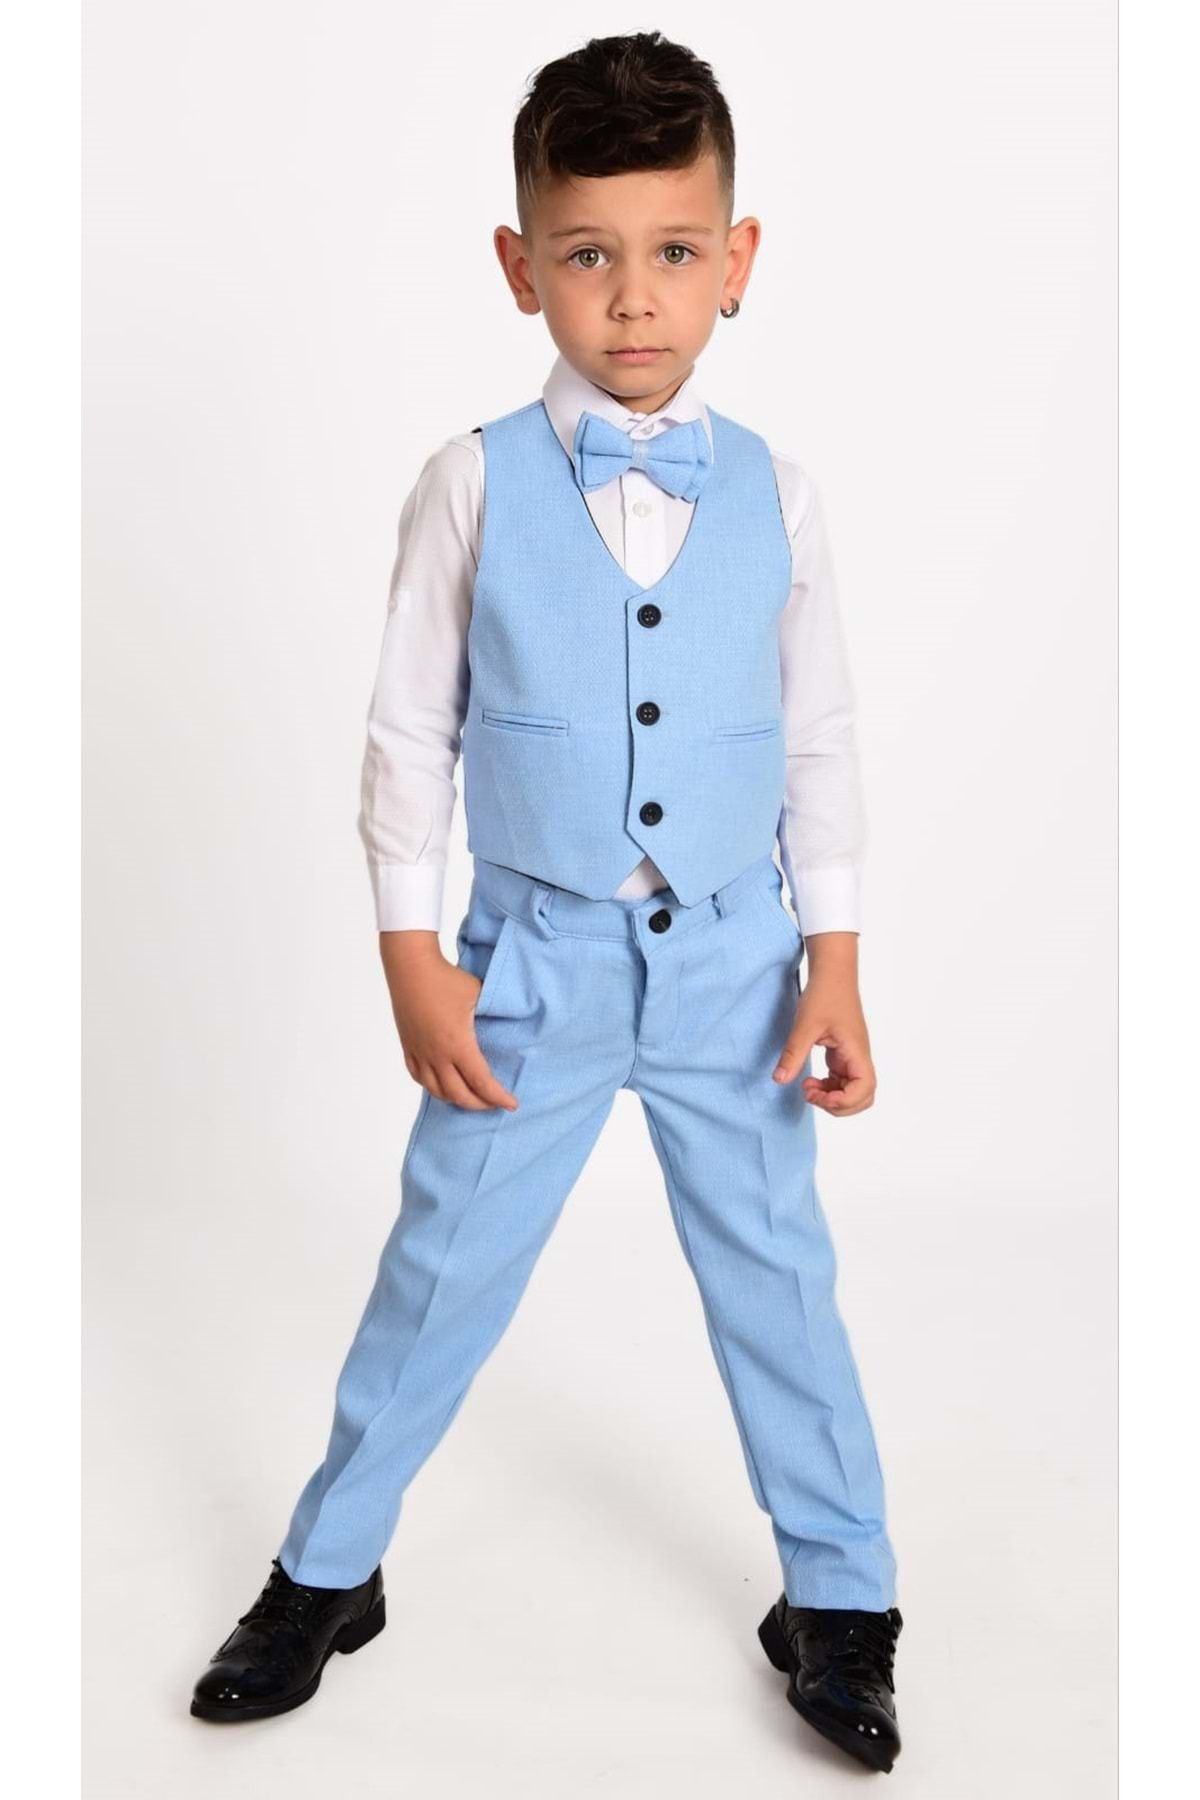 Mnk Yelekli Erkek Çocuk Takım Elbise Mnk0272 Bebe Mavi